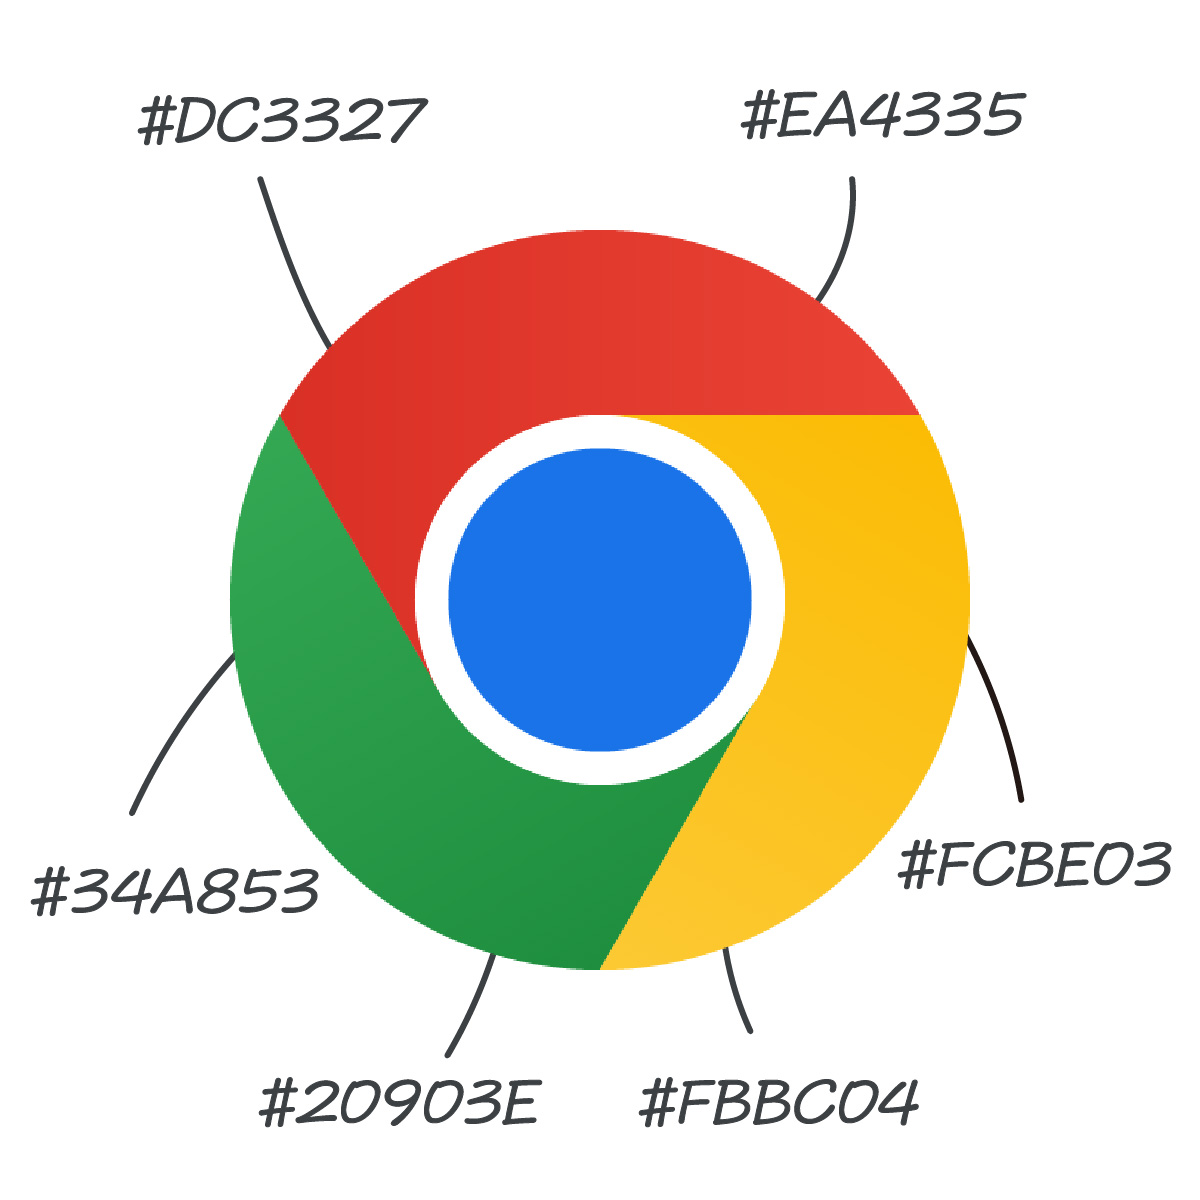 Chrome のロゴ、実は微妙にグラデーションがかかってる！？

#ロゴマークの日
#Googleのちょっと小話